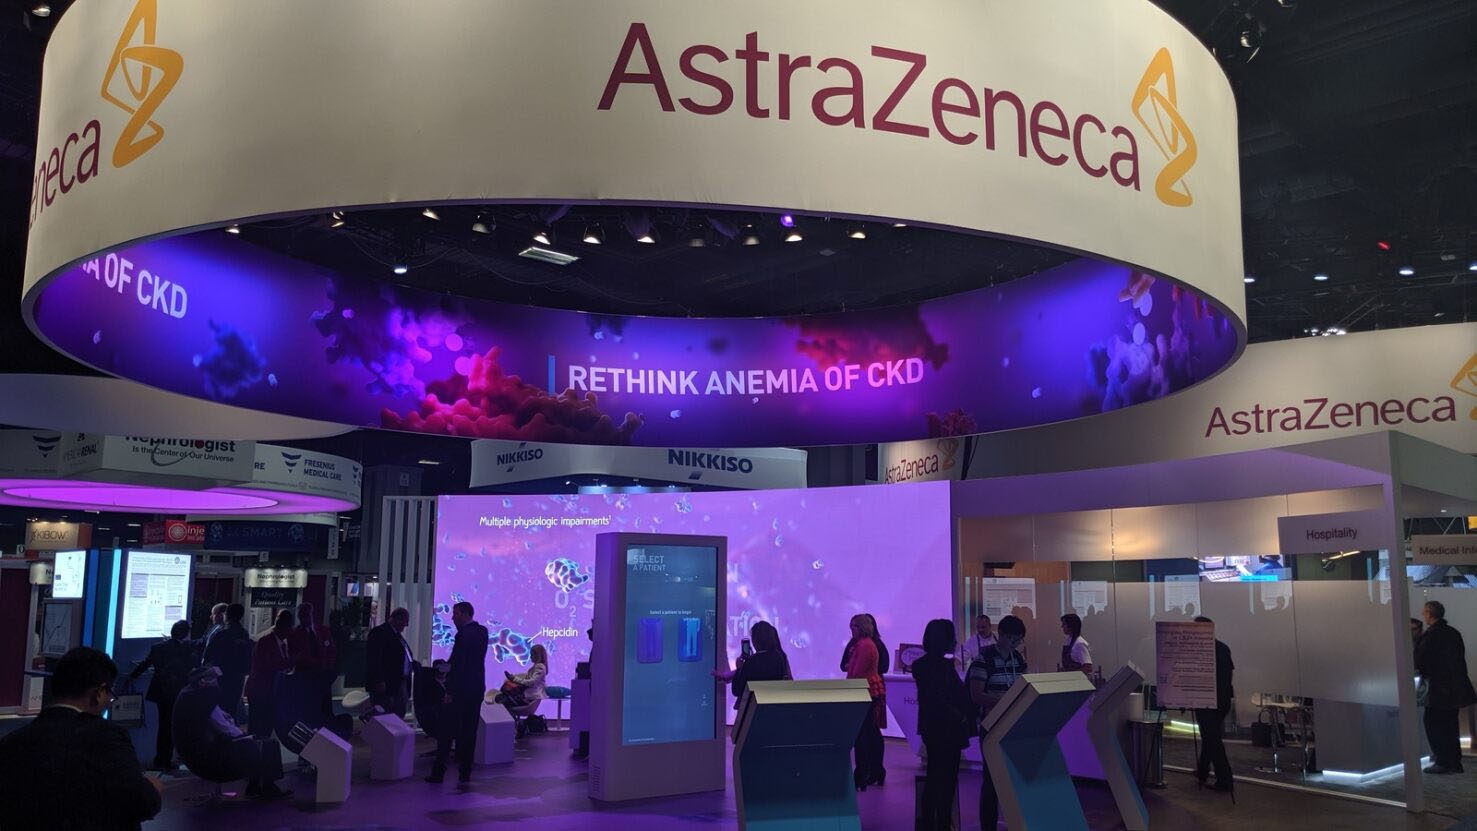 Image of AstraZeneca's tradeshow booth